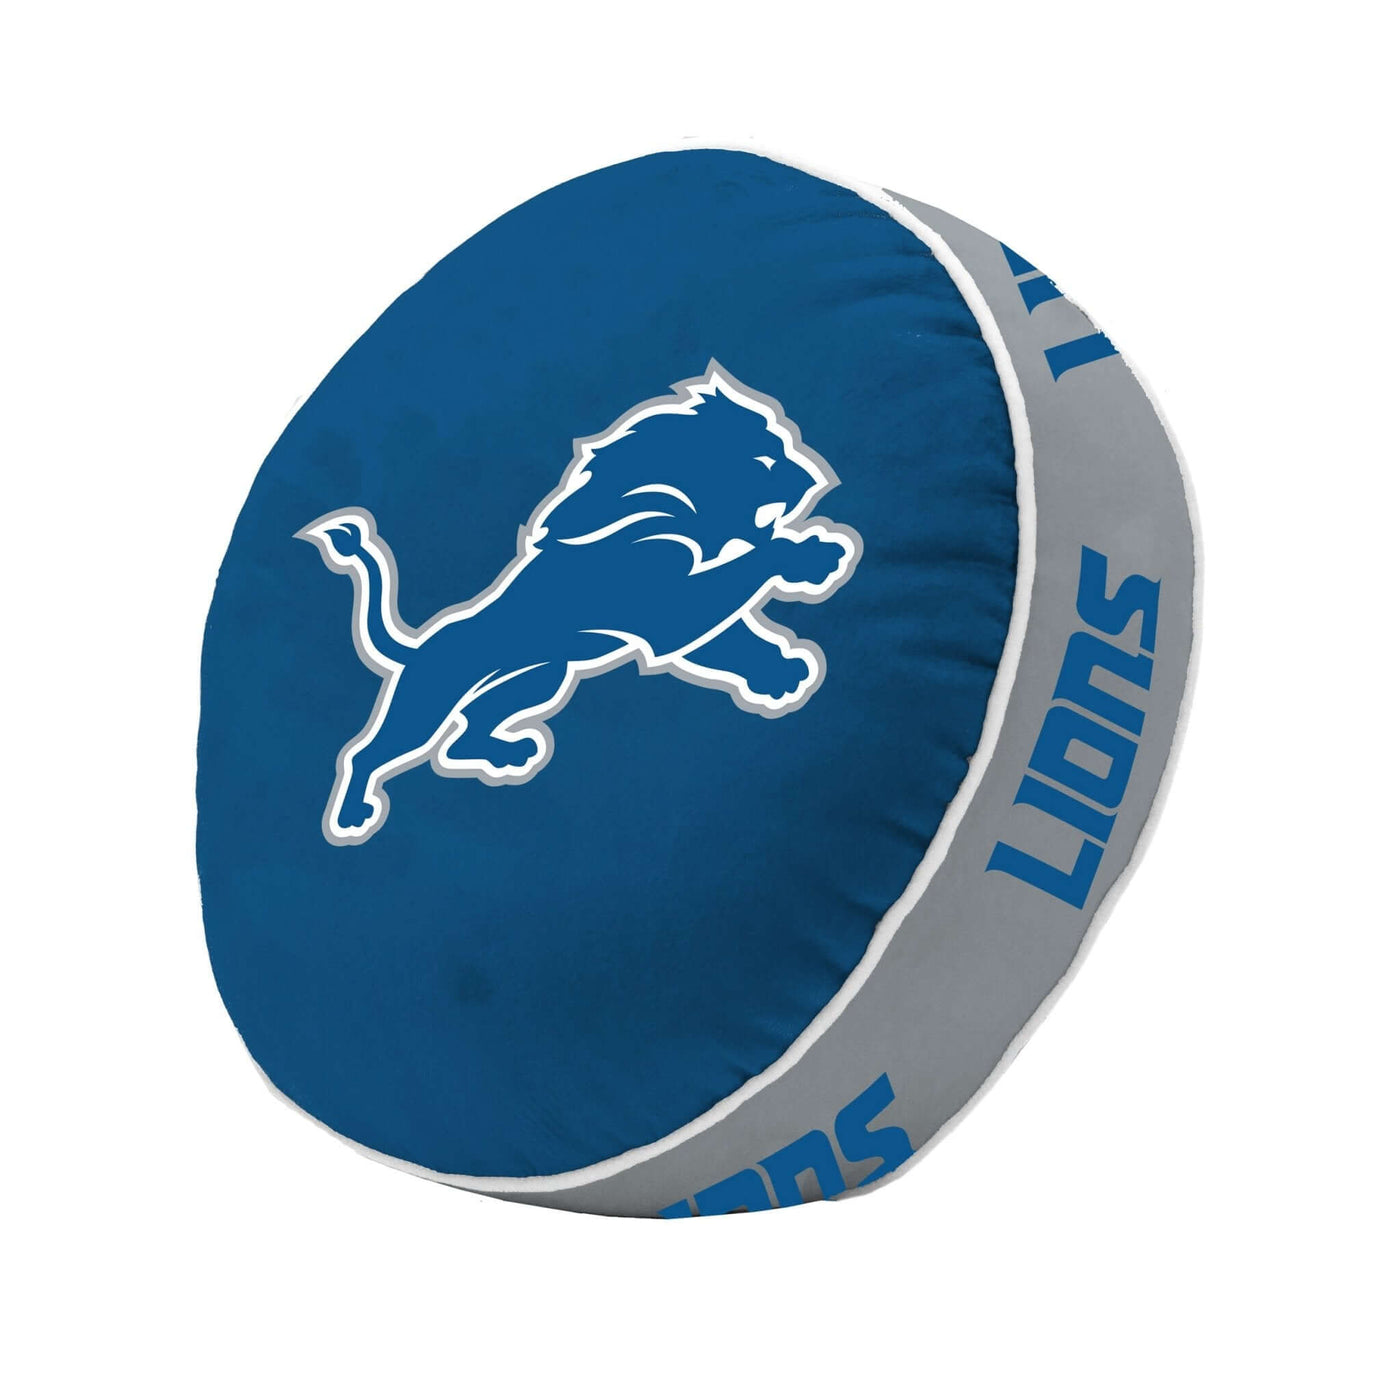 Detroit Lions Puff Pillow - Logo Brands